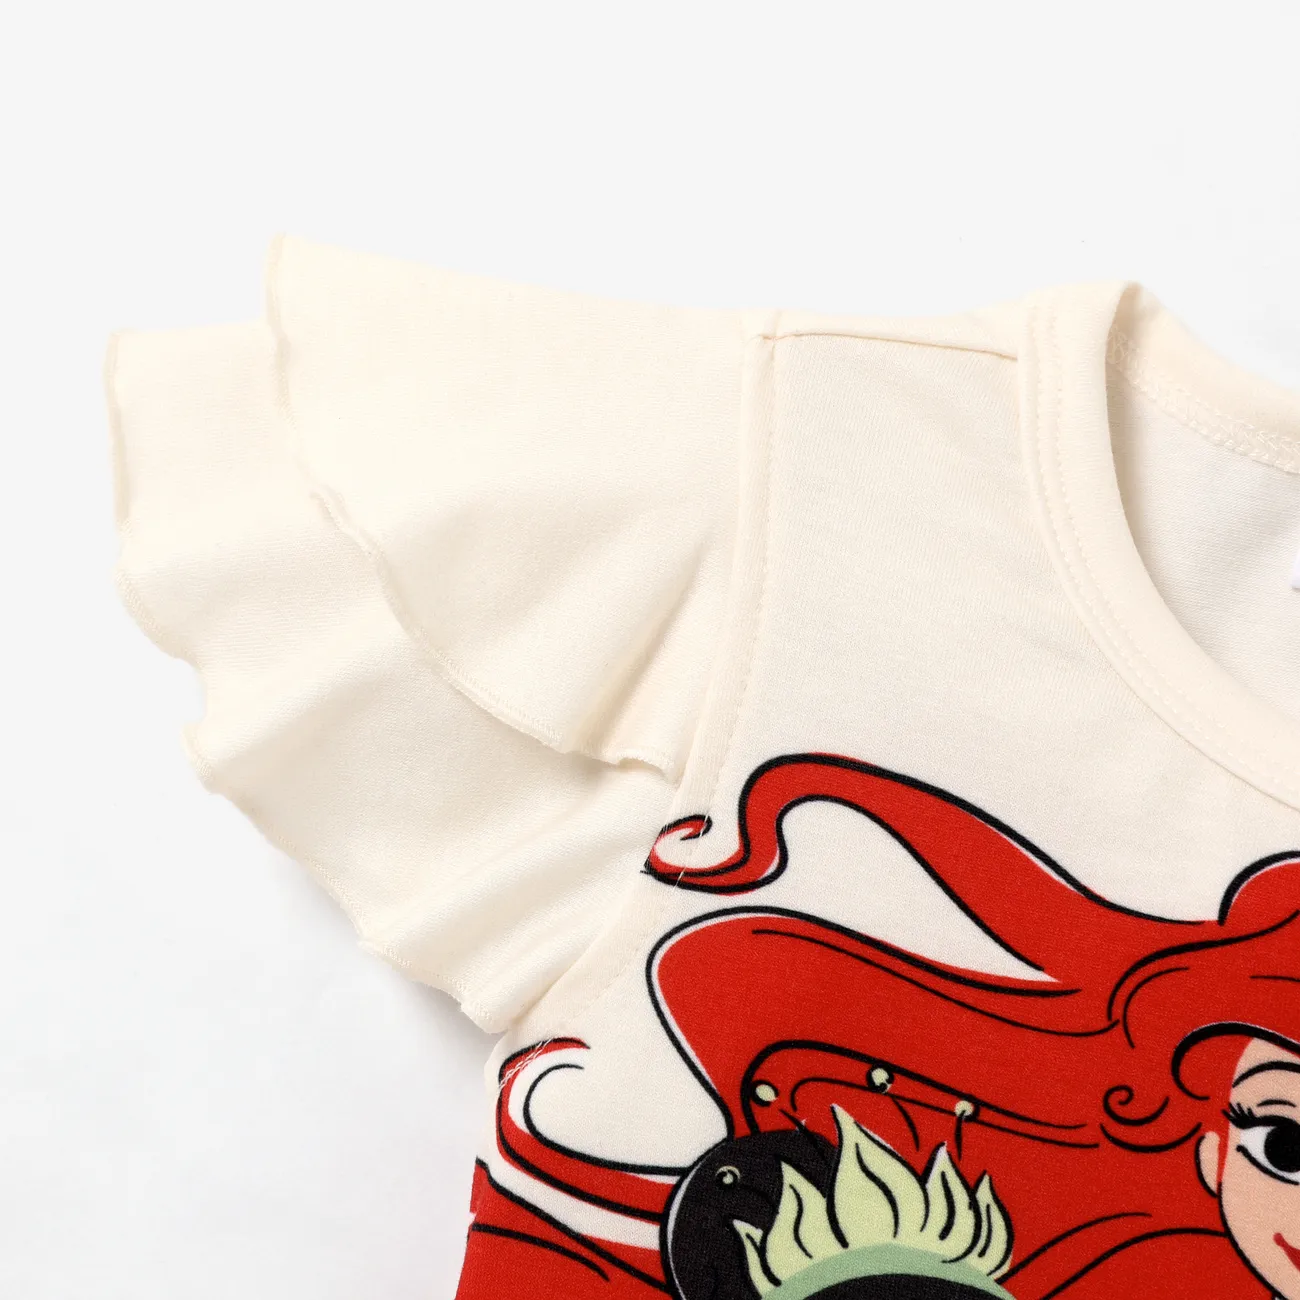 Disney Princess Toddler Girl Naia™ Character Print Ruffled Short-sleeve Tee White big image 1